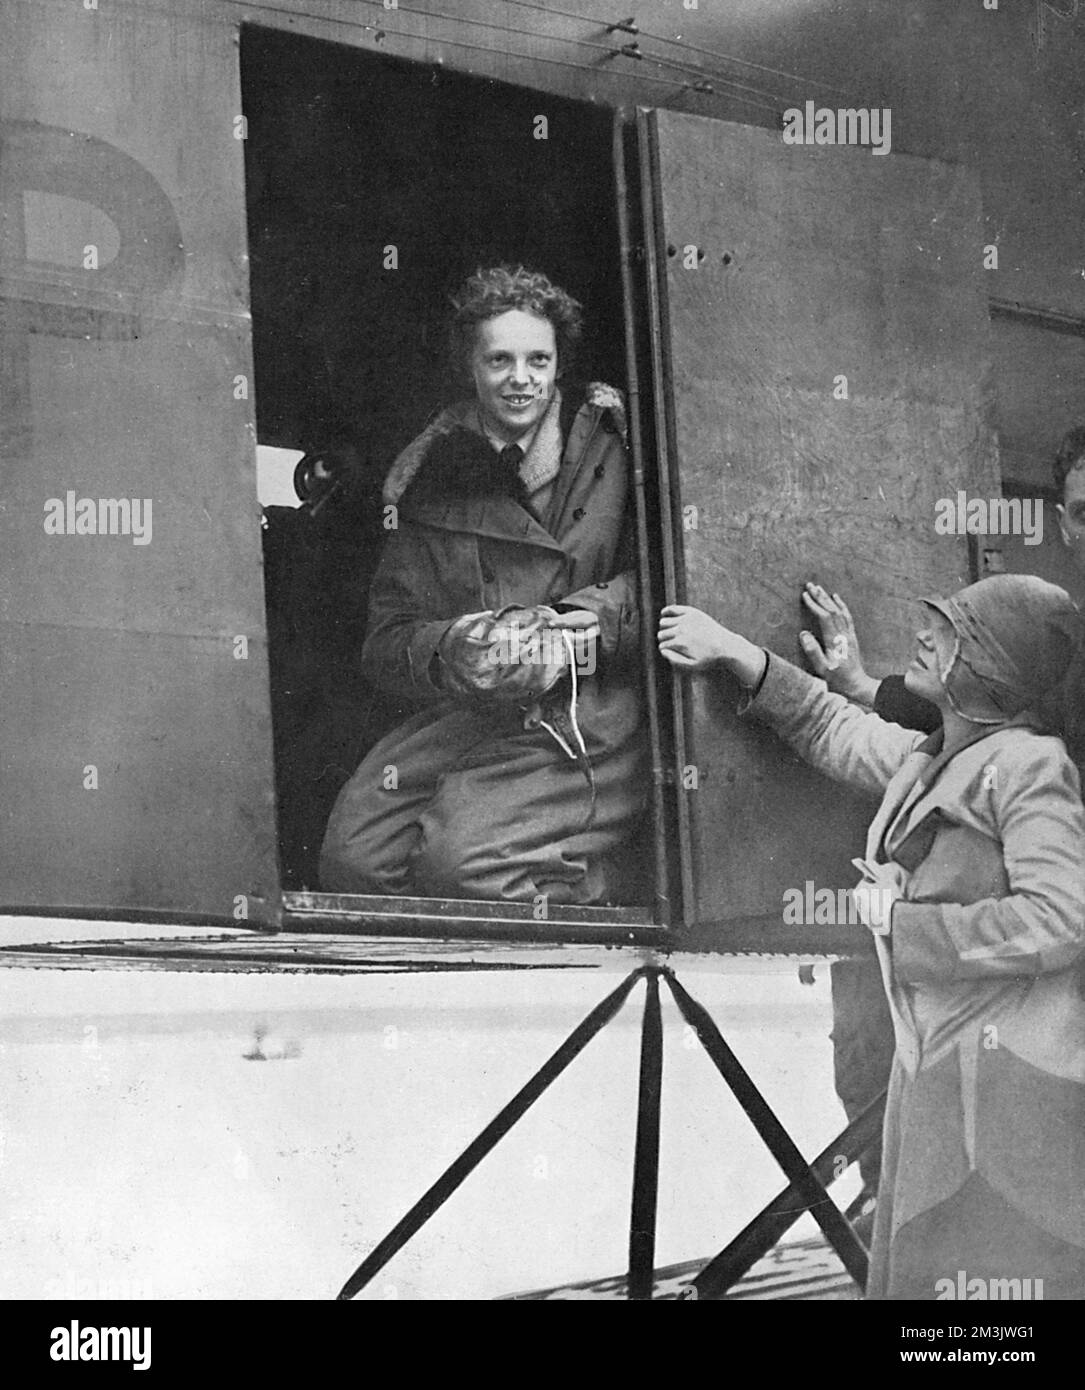 Amelia Earhart (1897 - 1937) momentos después de haber completado su vuelo transatlántico en 1928. Aunque era sólo un pasajero, Earhart fue la primera mujer en volar el Atlántico. Preocupada por el hecho de que sus pilotos en este histórico viaje no se había dado ningún crédito, ella decidió volar en solitario, finalmente lograr su objetivo en mayo de 1932 cuando voló de Terranova a Irlanda del Norte. El avión de Earhart desapareció durante un vuelo alrededor del mundo con su navegante, Frederick Noonan en 1937. 1928 Foto de stock